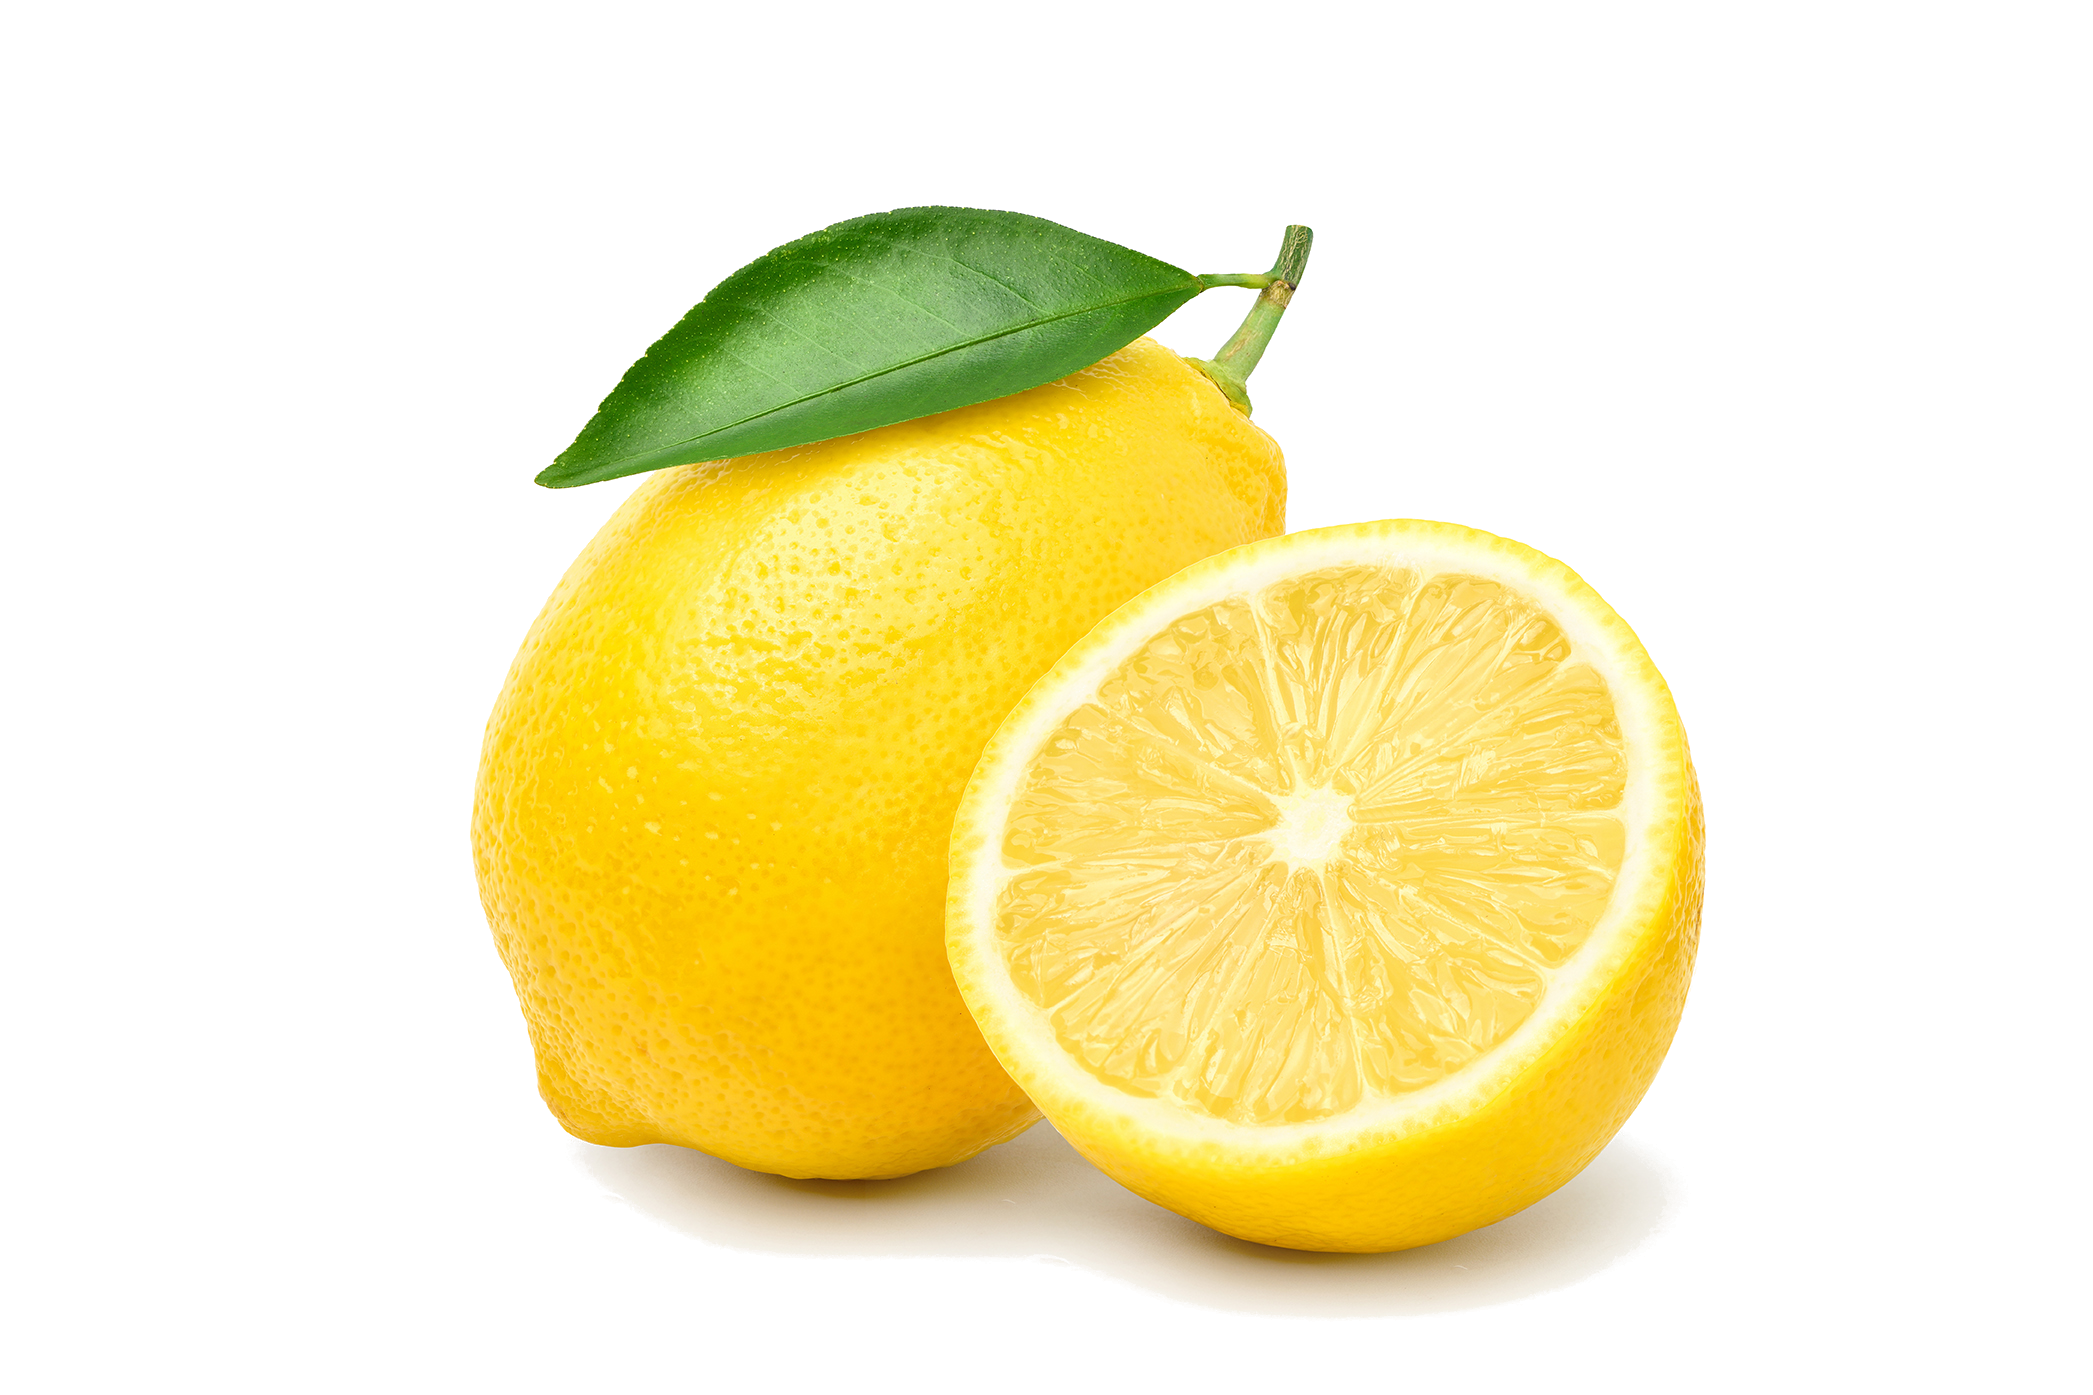 Limón Eureka-Es un limón muy jugoso y aromático, de tamaño medio y forma redonda. Contiene muy pocas semillas. Su producción comprende de marzo a mayo.